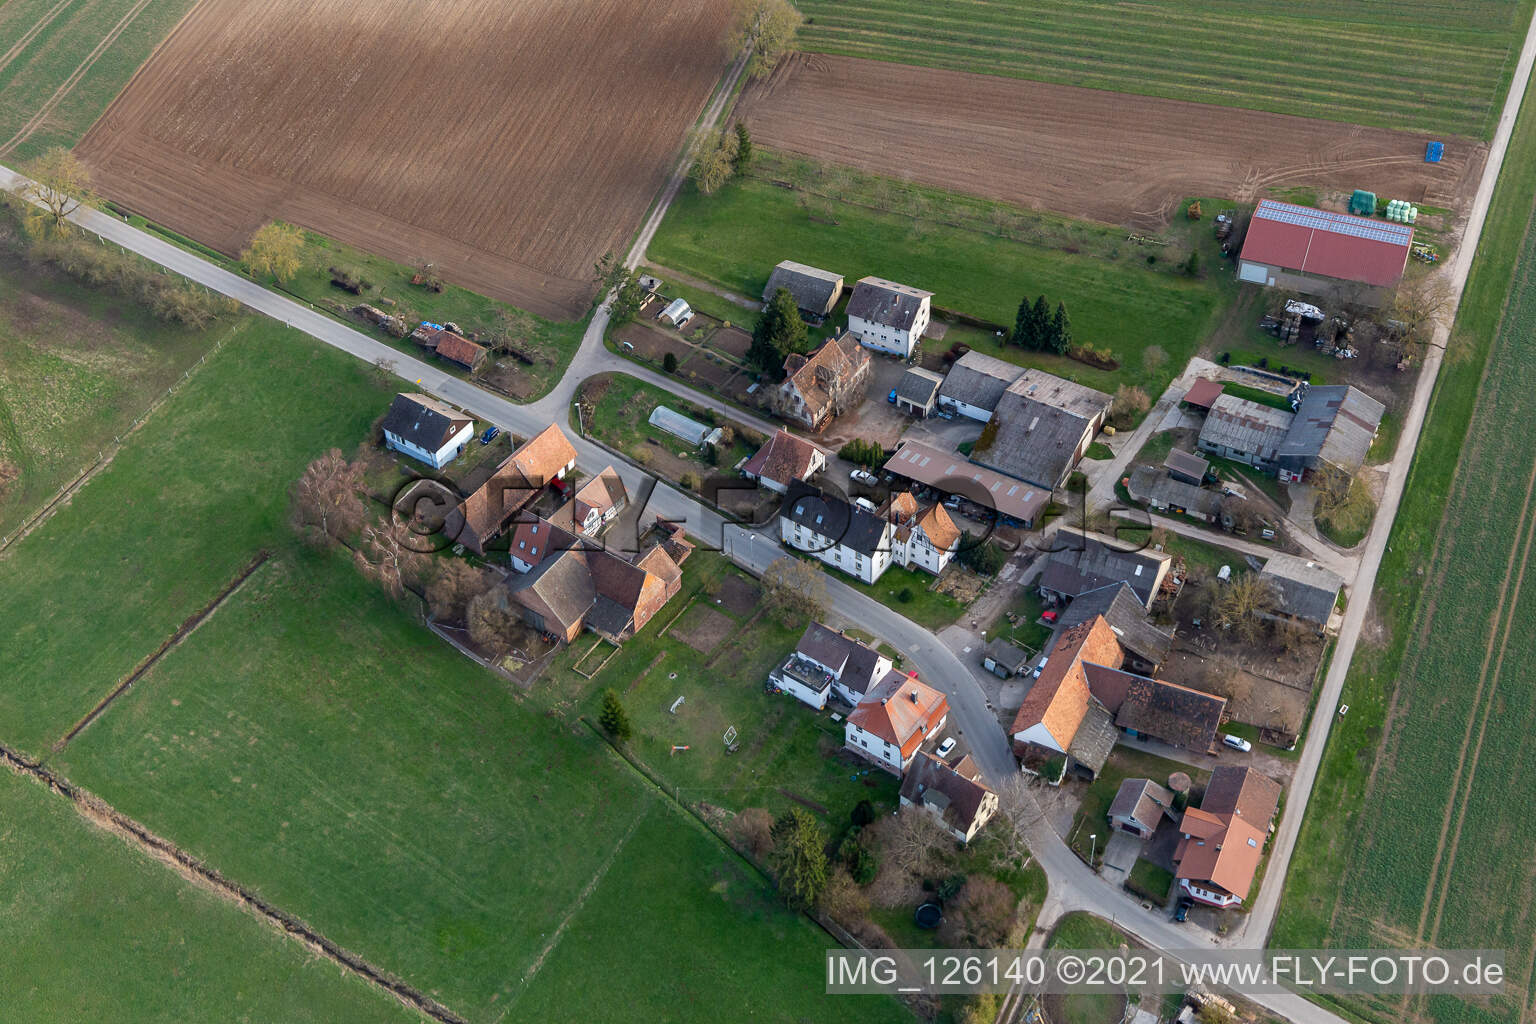 Vue aérienne de Vins et vins mousseux Däuwel à le quartier Deutschhof in Kapellen-Drusweiler dans le département Rhénanie-Palatinat, Allemagne